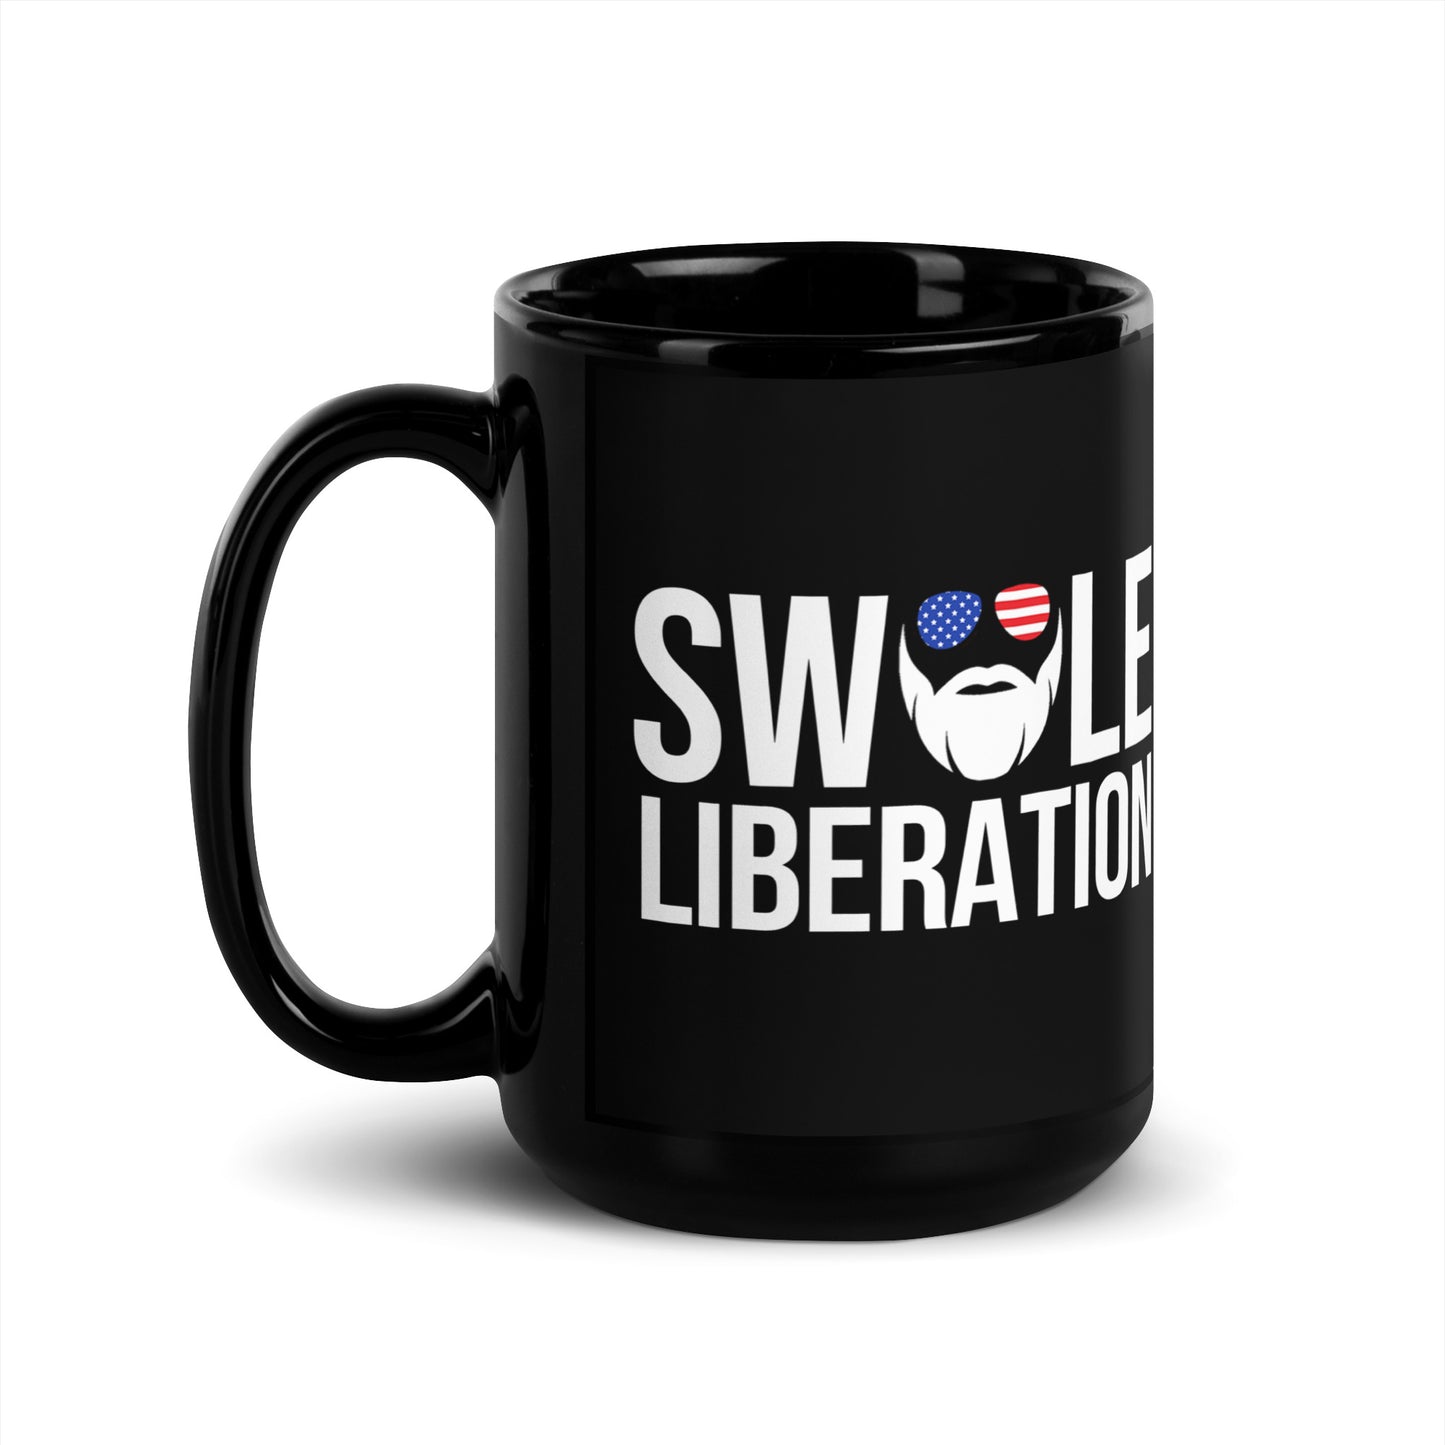 Swole Liberation Mug